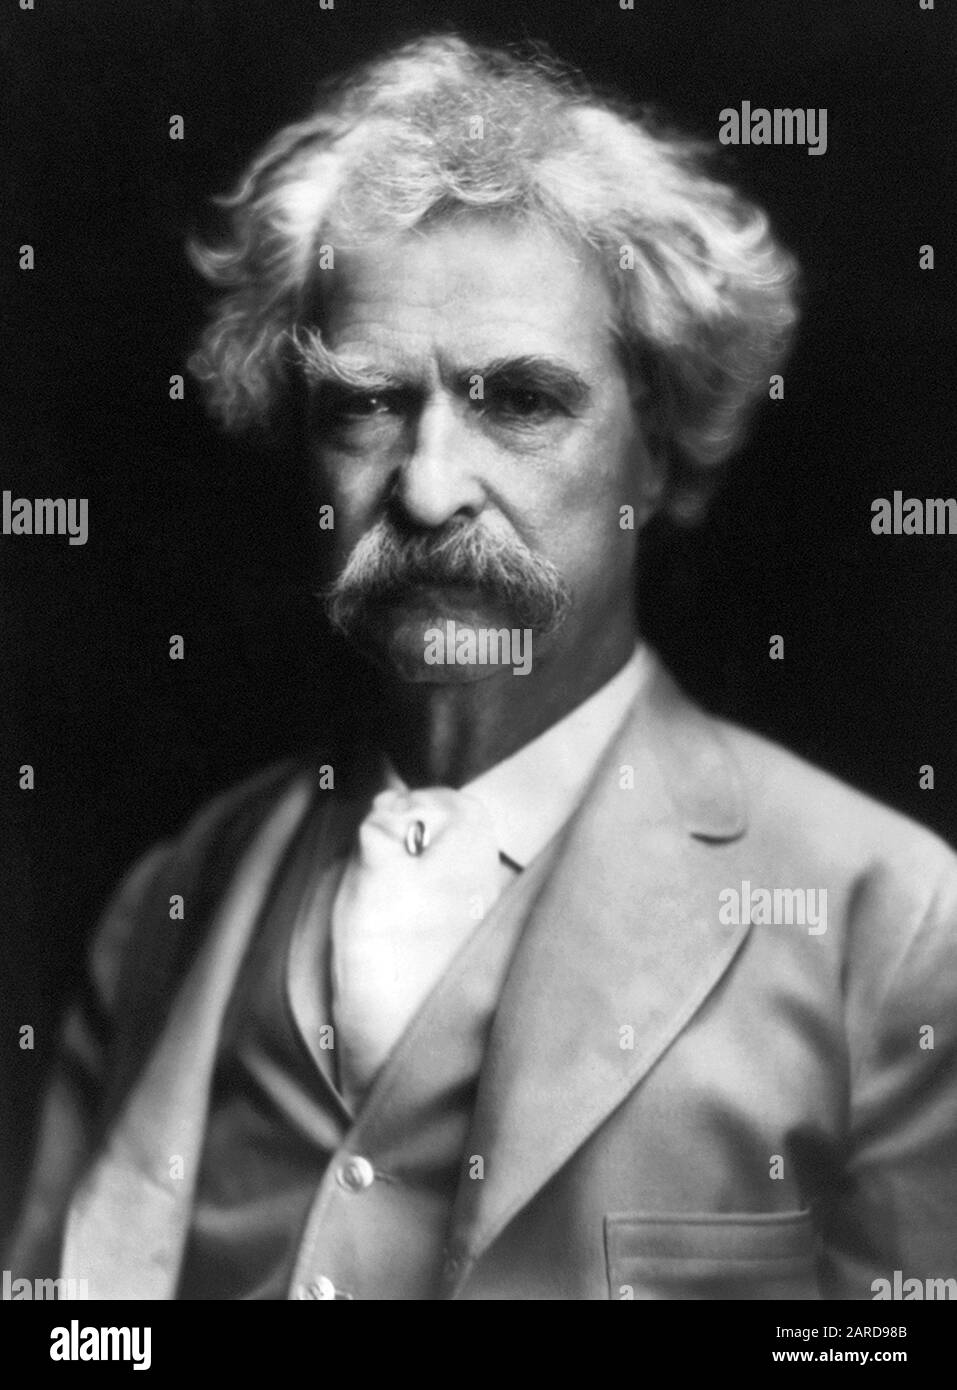 Vintage-Portrait-Foto des amerikanischen Schriftstellers und Humoristen Samuel Langhorne Klemens (zwischen 1835 und 1910), besser bekannt unter seinem Federnamen Mark Twain. Foto ca. 1907. Stockfoto